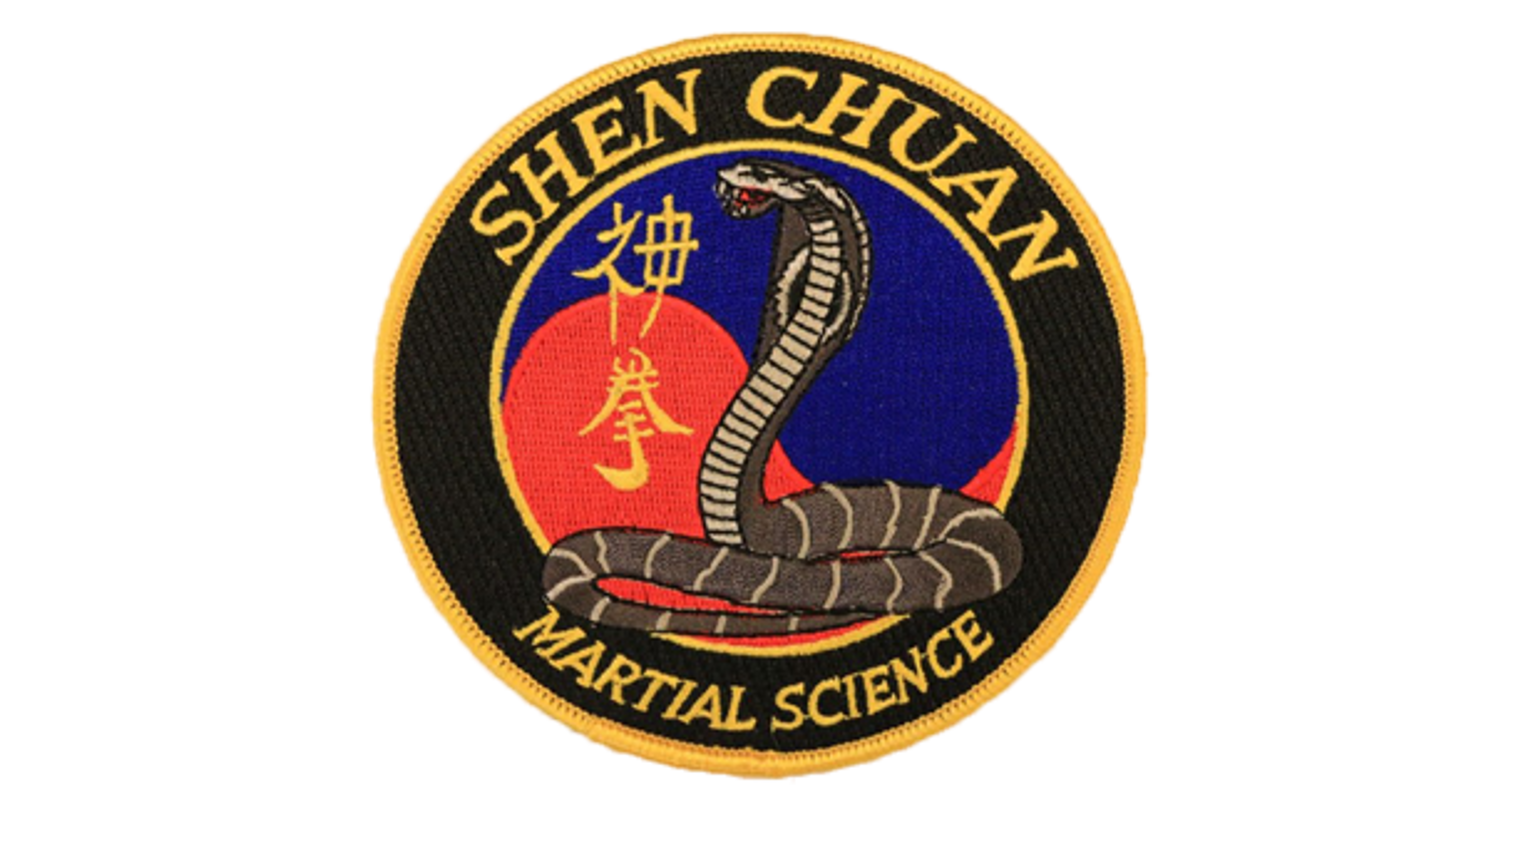 Shen Chuan Martial Science